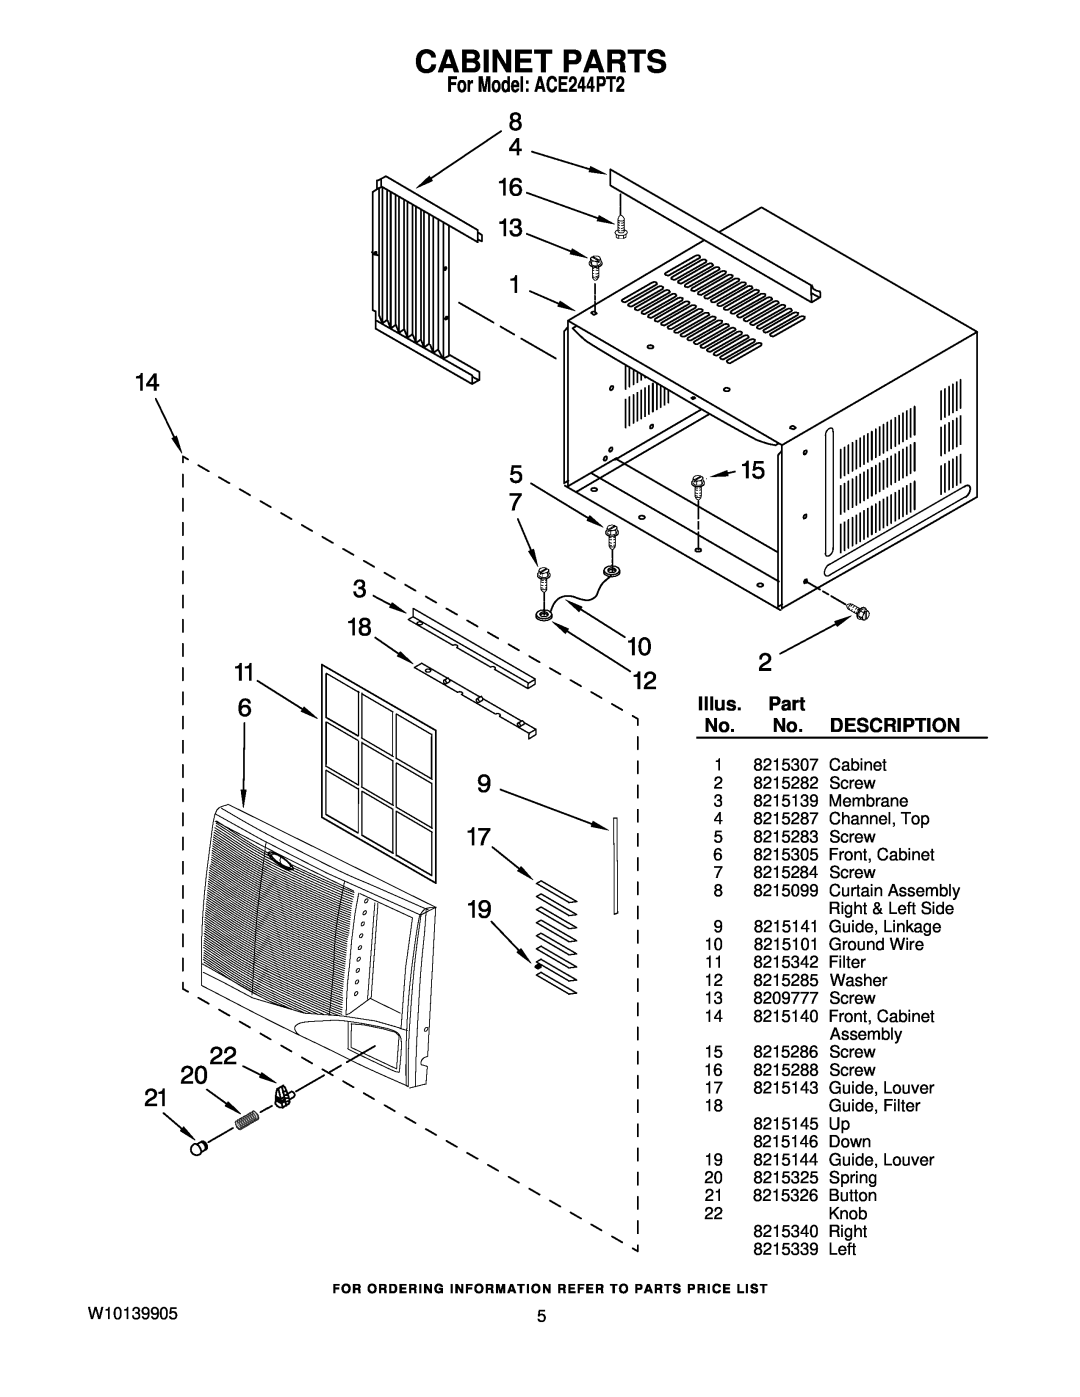 Whirlpool manual Cabinet Parts, Illus, Description, For Model ACE244PT2 